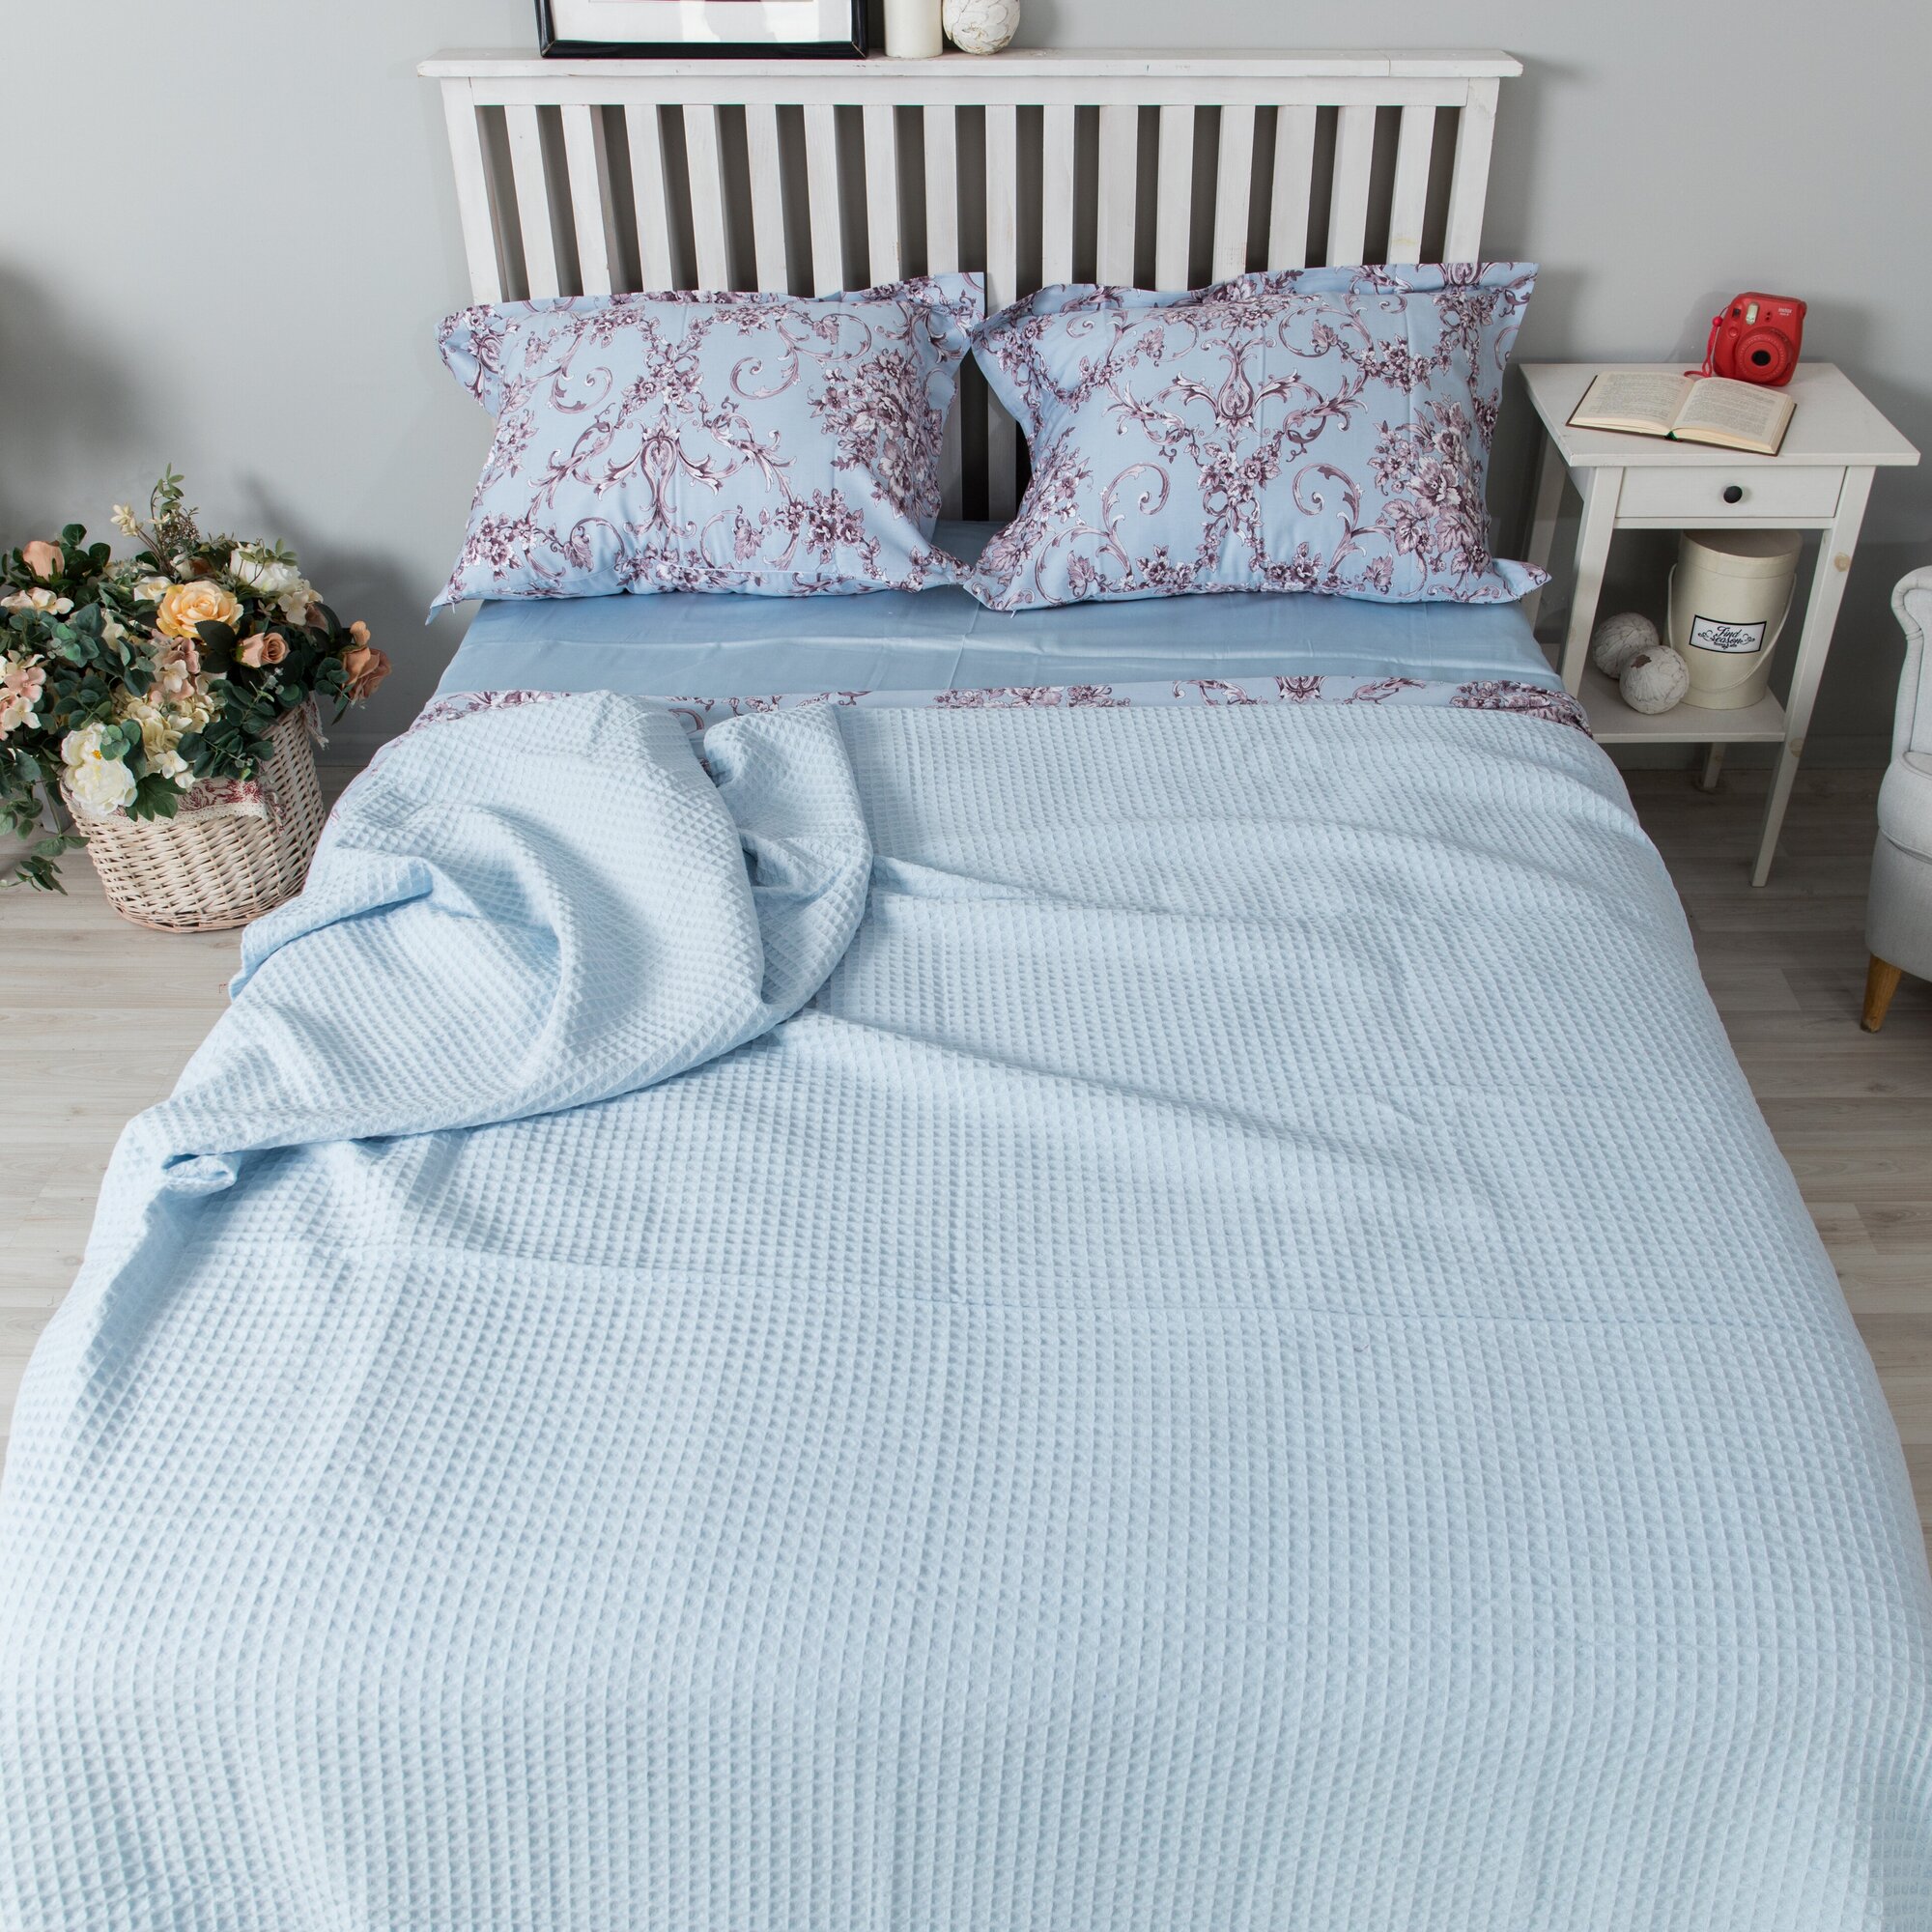 Плед вафельный oops_postel, покрывало для спальни, 100% хлопок, размер 220 см х 230 см, цвет: голубой, греческое плетение